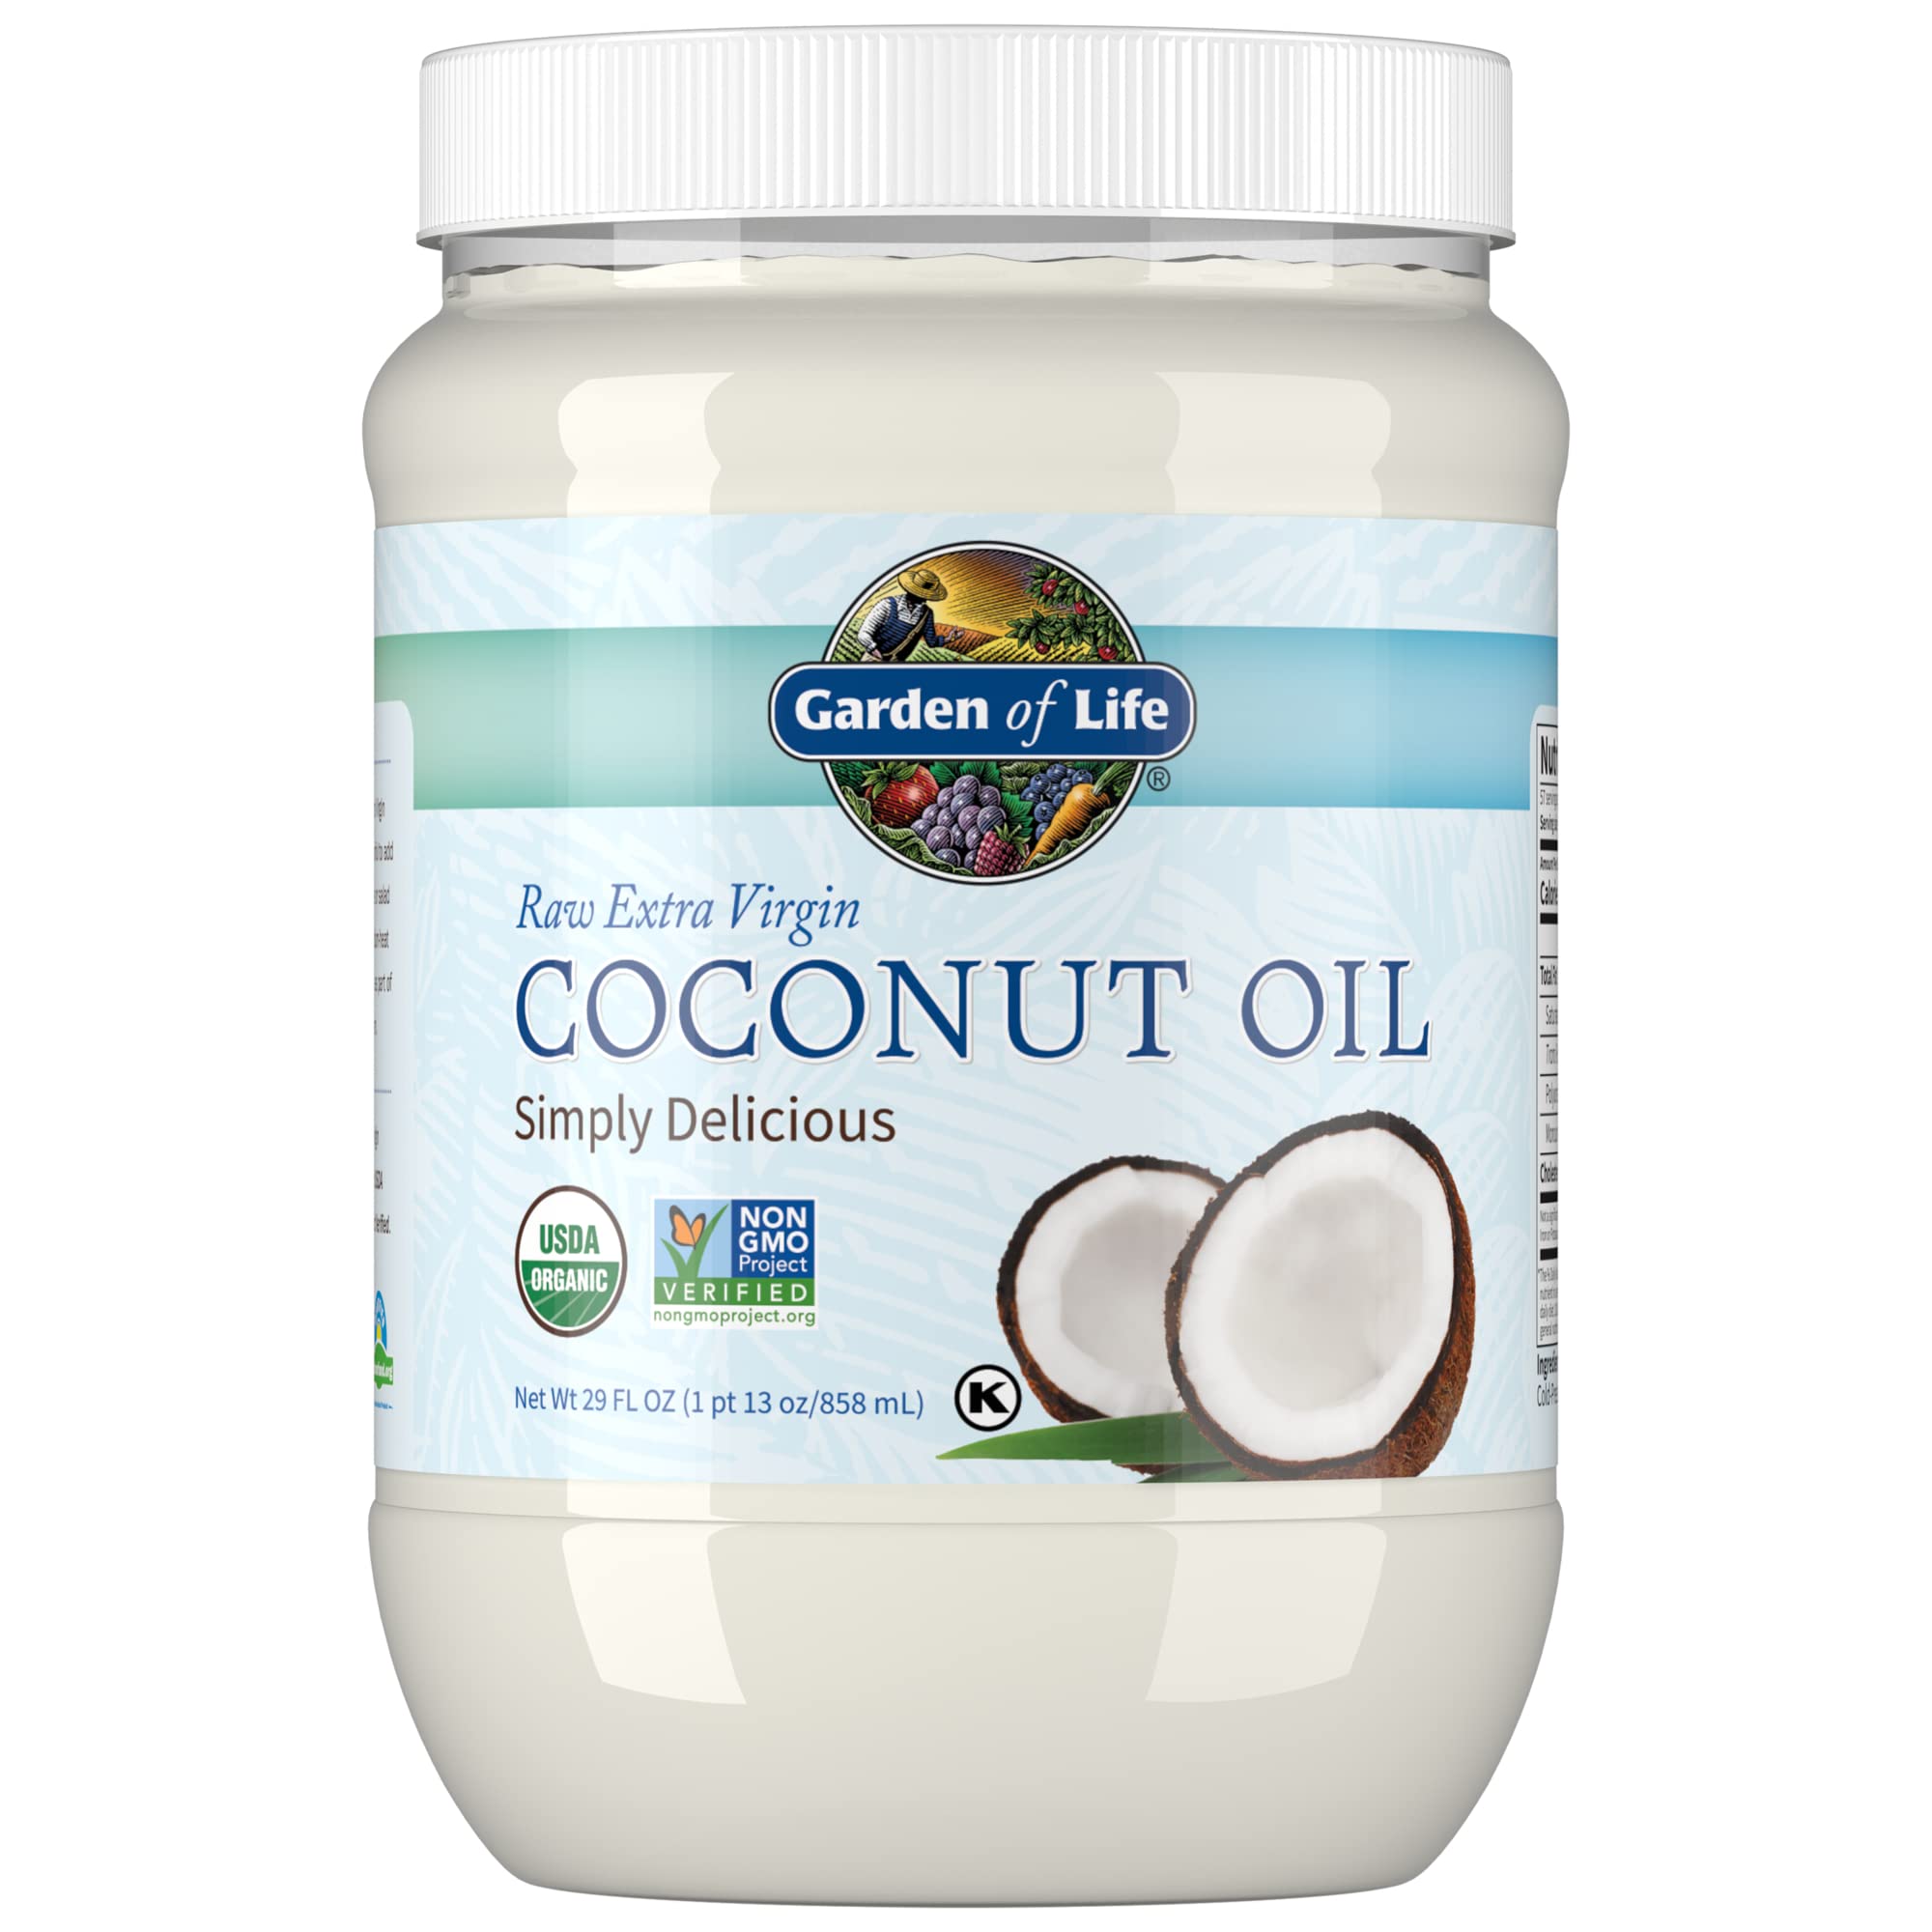 alice conlon recommends Coconut Oil Blow Job